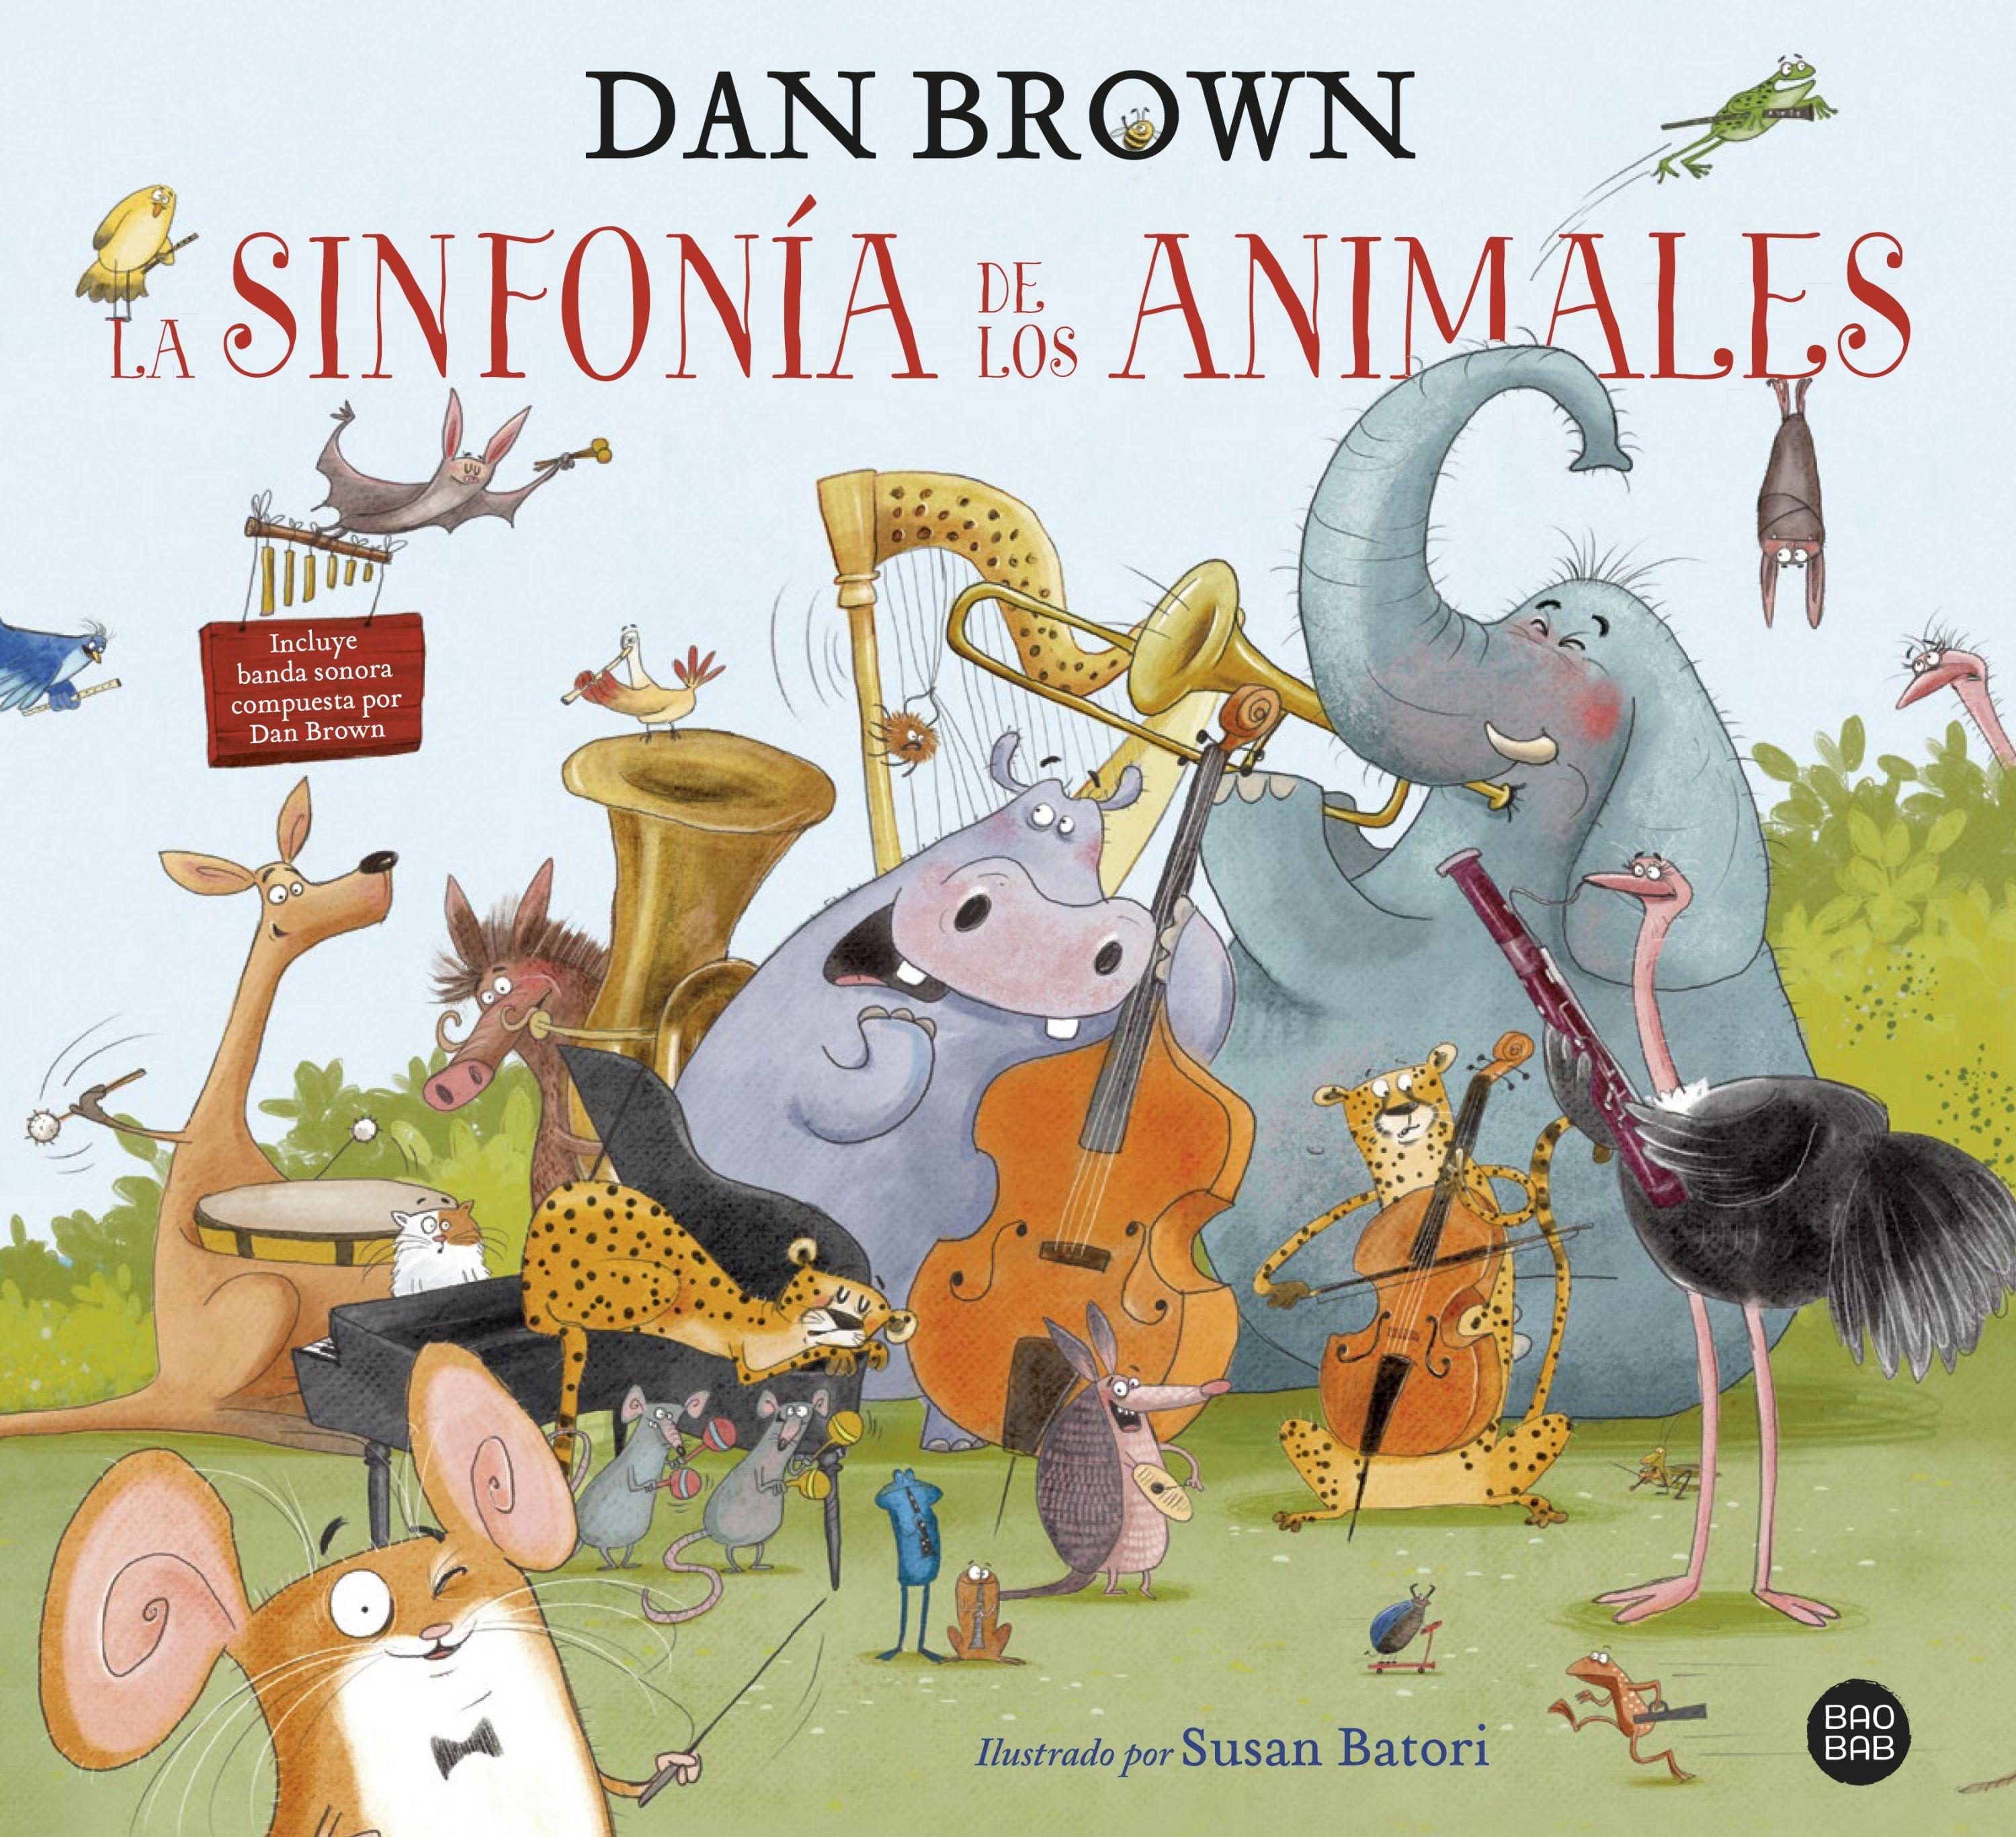 La sinfonía de los animales "El primer libro infantil de Dan Brown"